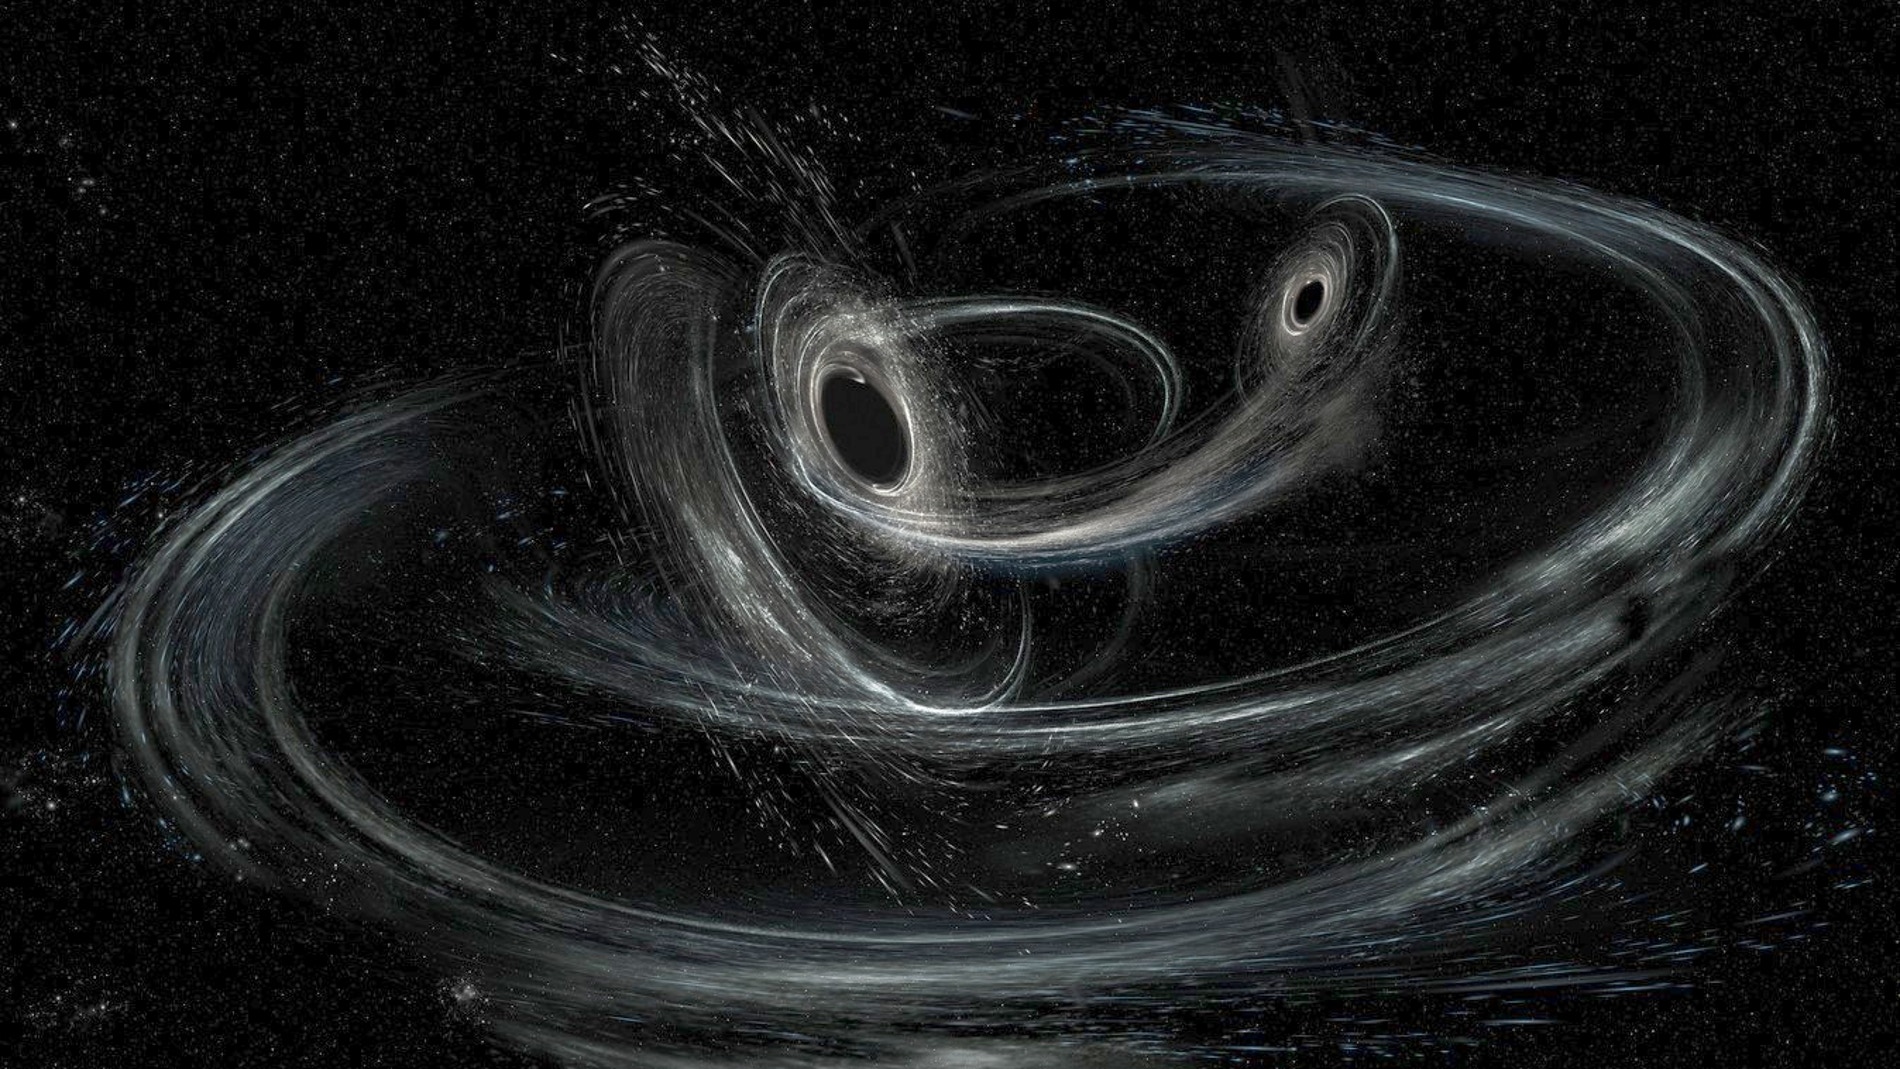 Nuevo catalogo con decenas de nuevas ondas gravitacionales detectadas por Virgo y LIGO